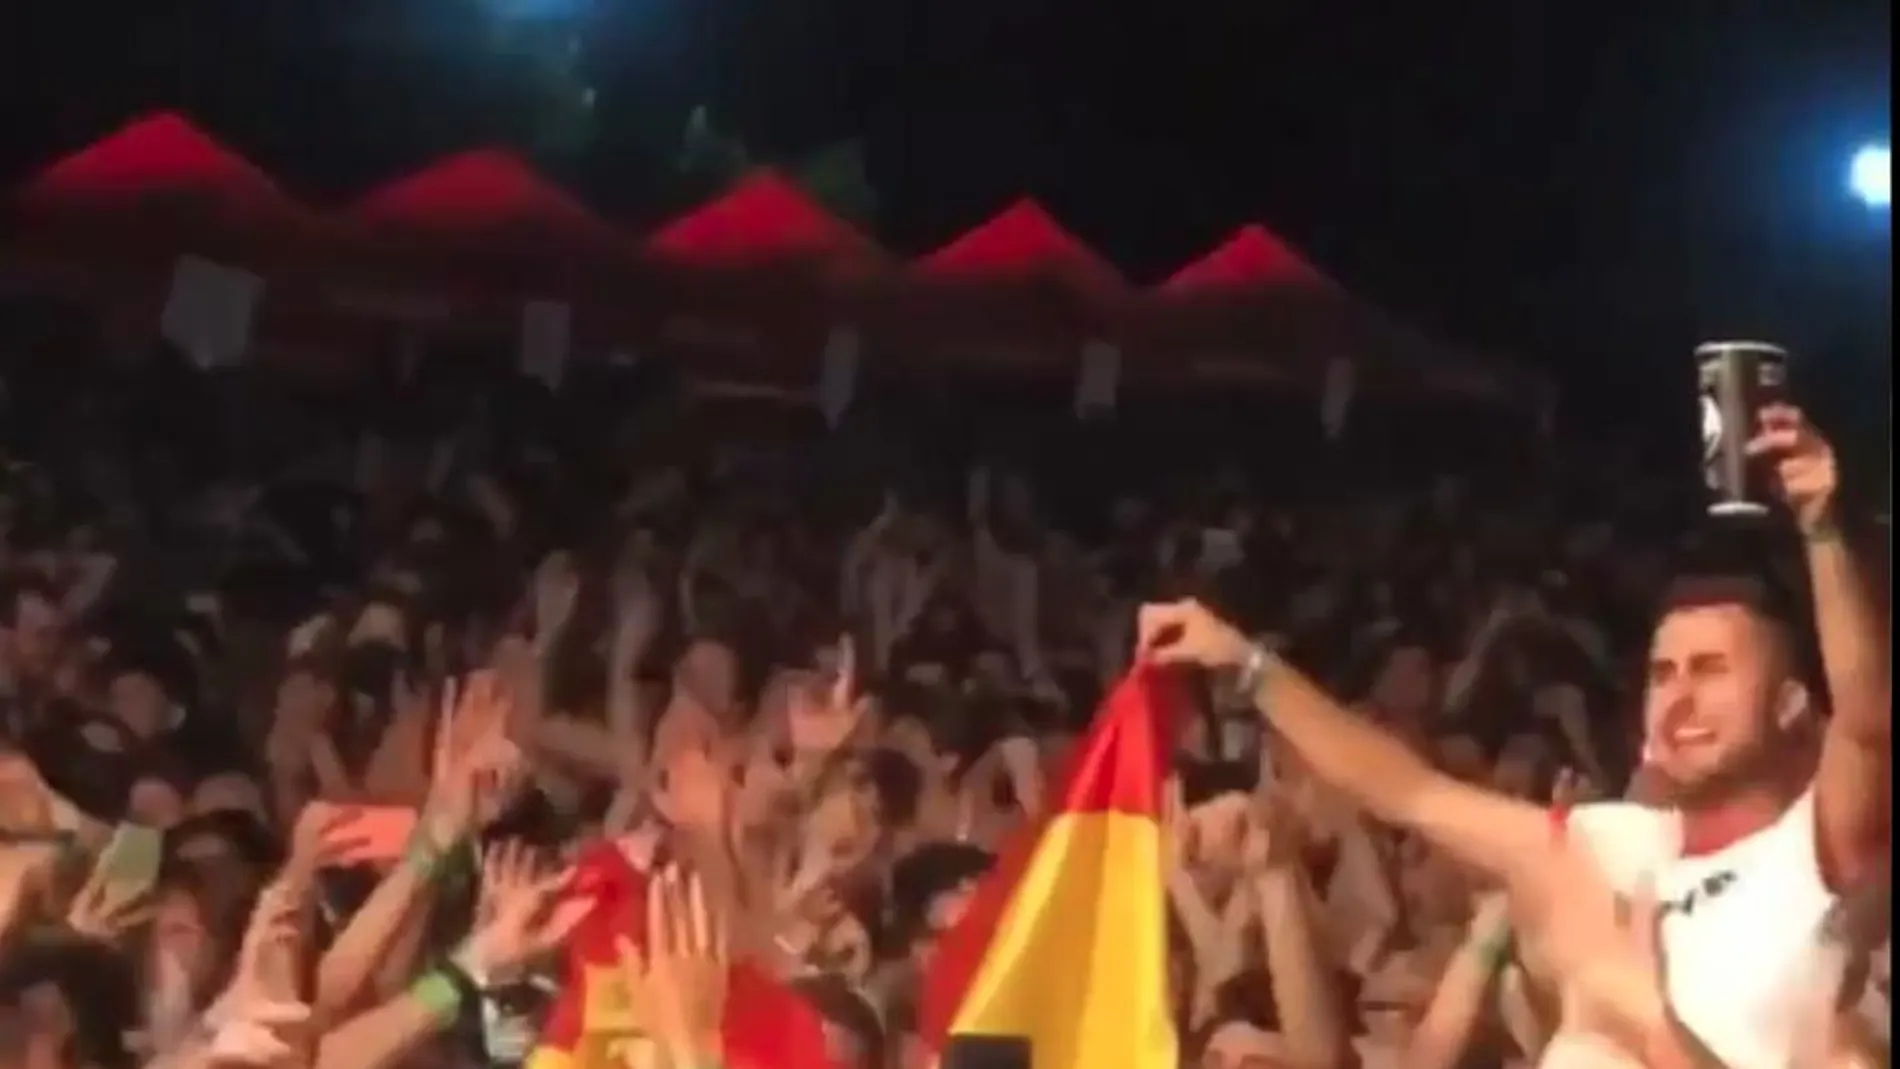 Captura del instante donde se quema la bandera española